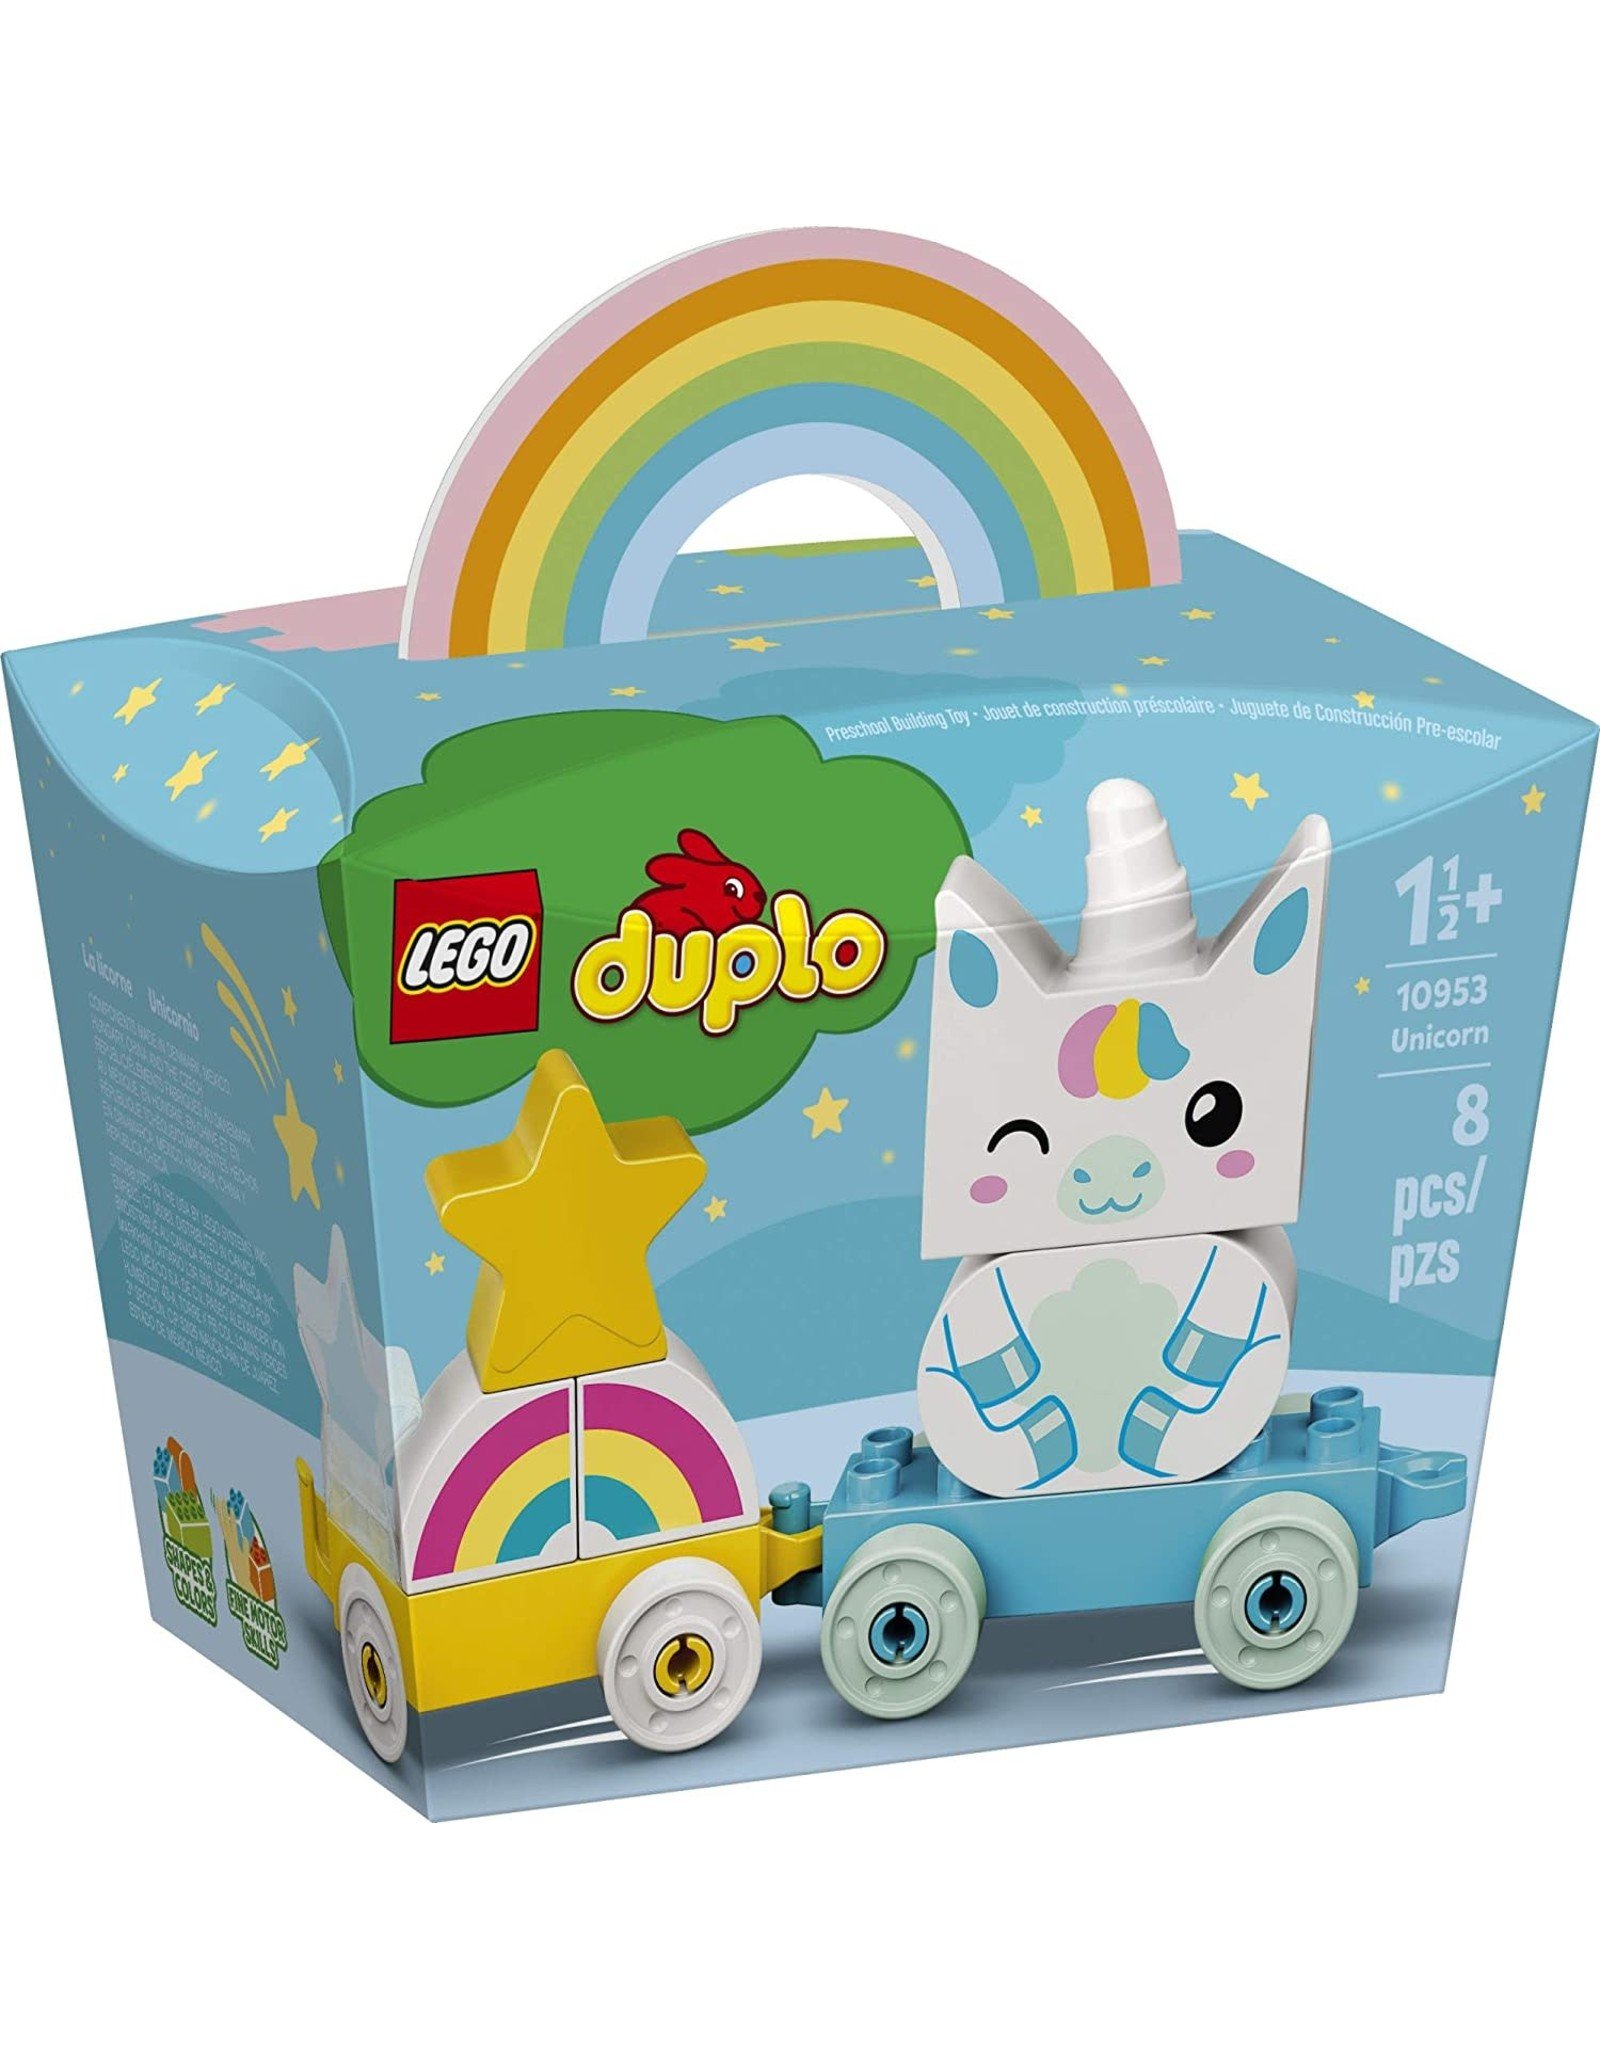 LEGO Duplo - 10953 - Unicorn